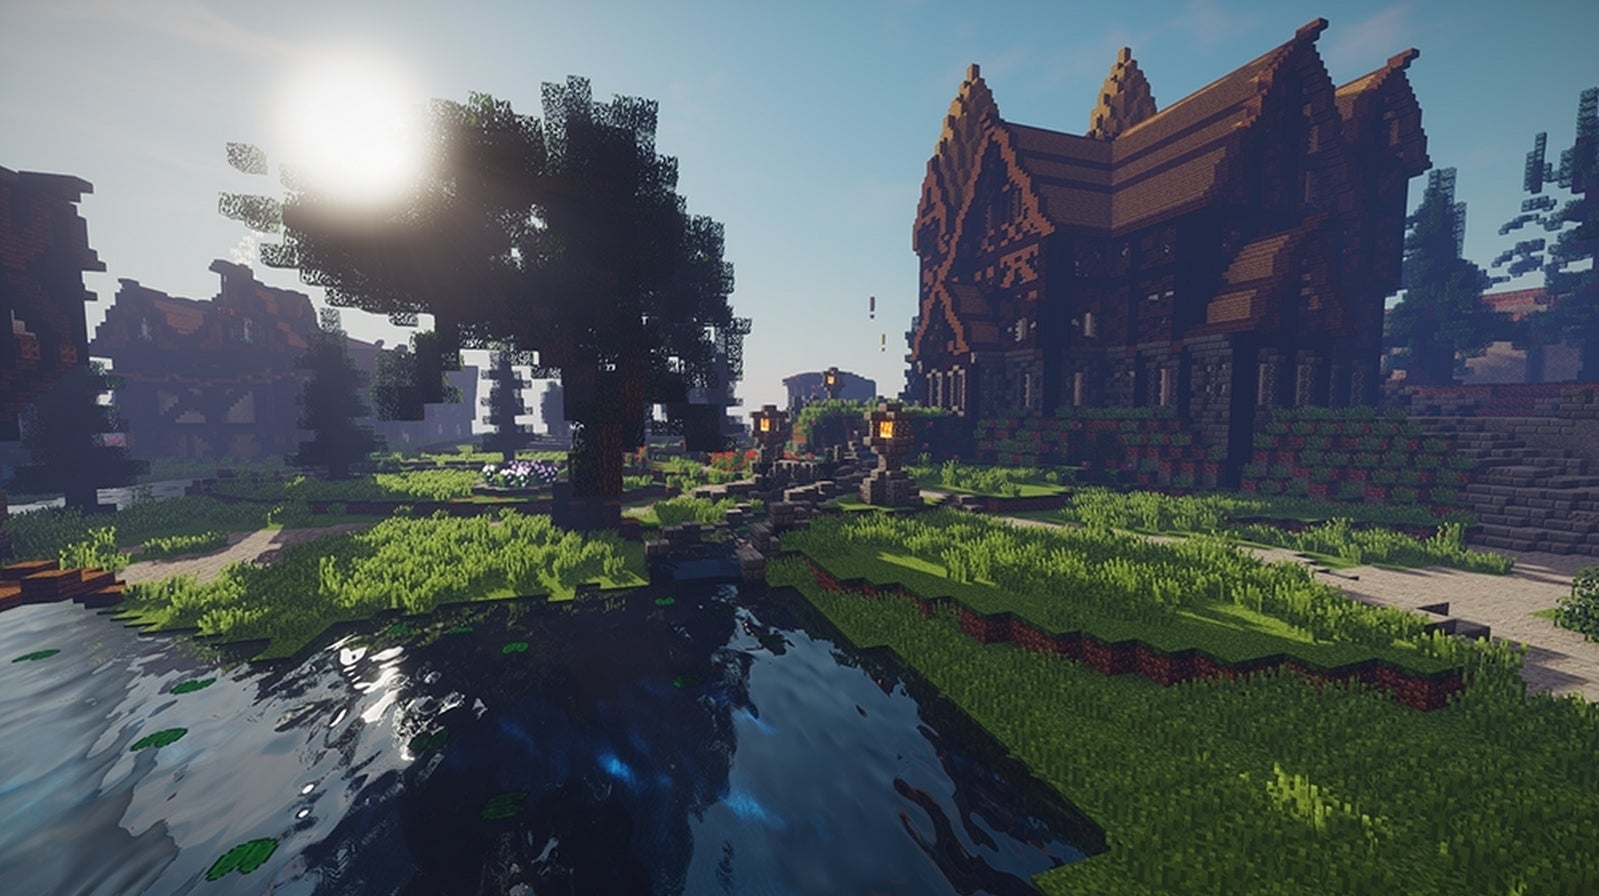 Bilder zu MineTania kombiniert Minecraft mit MMO-Aspekten, startet heute in Beta